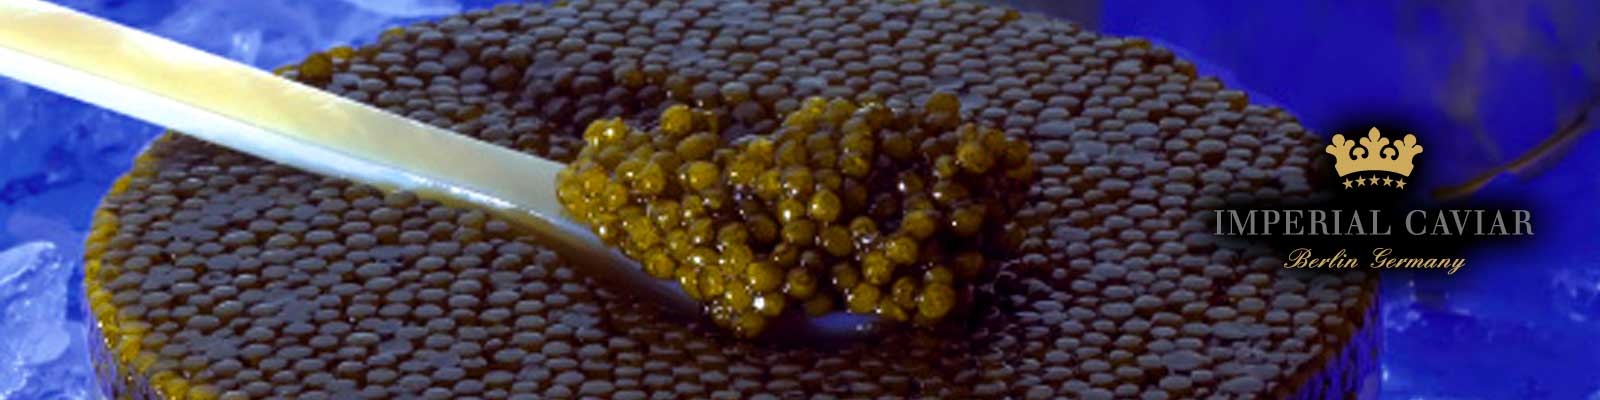 Kaviar sturgeon pilihan diraja Pelbagai jenis barangan import segar daripada pengeluar kaviar terbaik diperiksa dengan teliti oleh kakitangan kami yang cekap sebelum pembungkusan untuk suhu, rupa, bau, konsistensi dan rasa dan dikelaskan mengikut perbezaan terbaik dalam rasa dan nuansa warna. Dengan cara ini, kami mencipta pilihan pilihan untuk setiap gourmet.